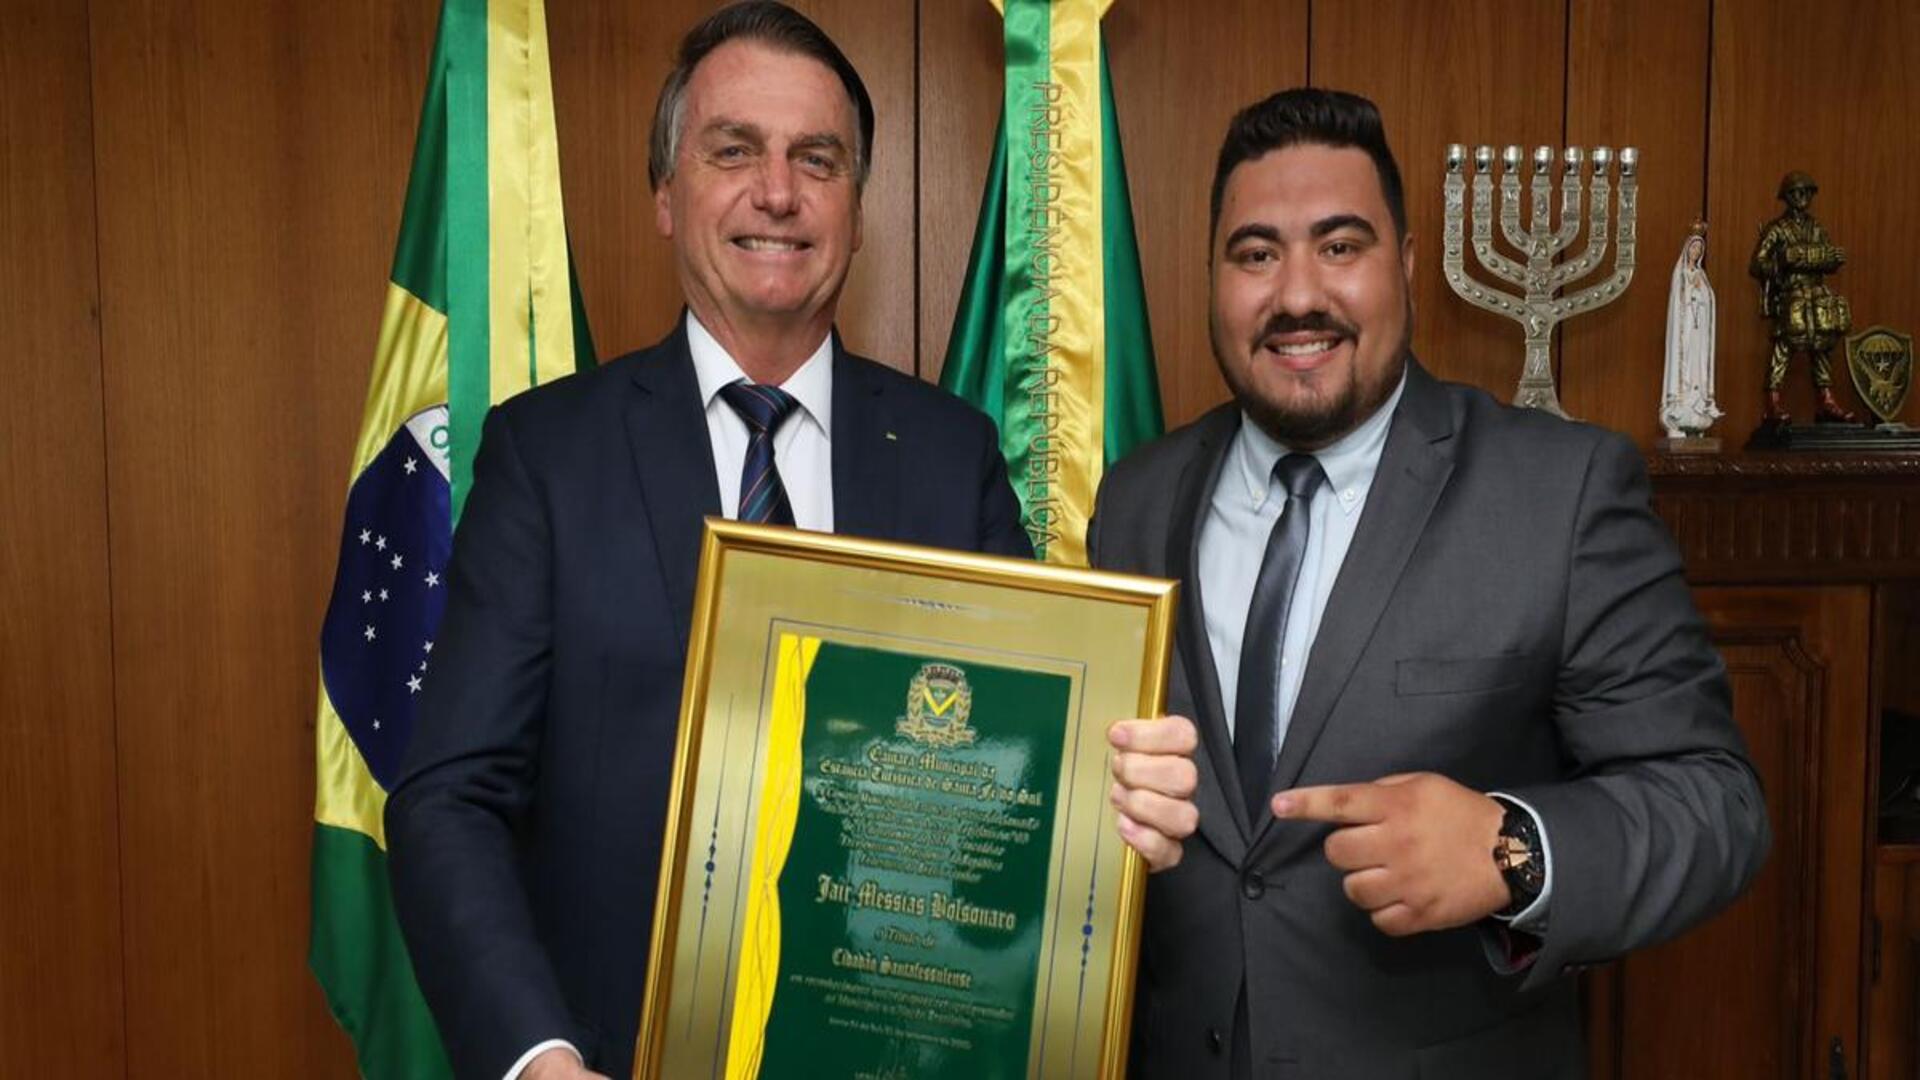 Agora Bolsonaro é cidadão santaféssulense. Honraria foi entregue pelo vereador Murilo Basi (PSL)